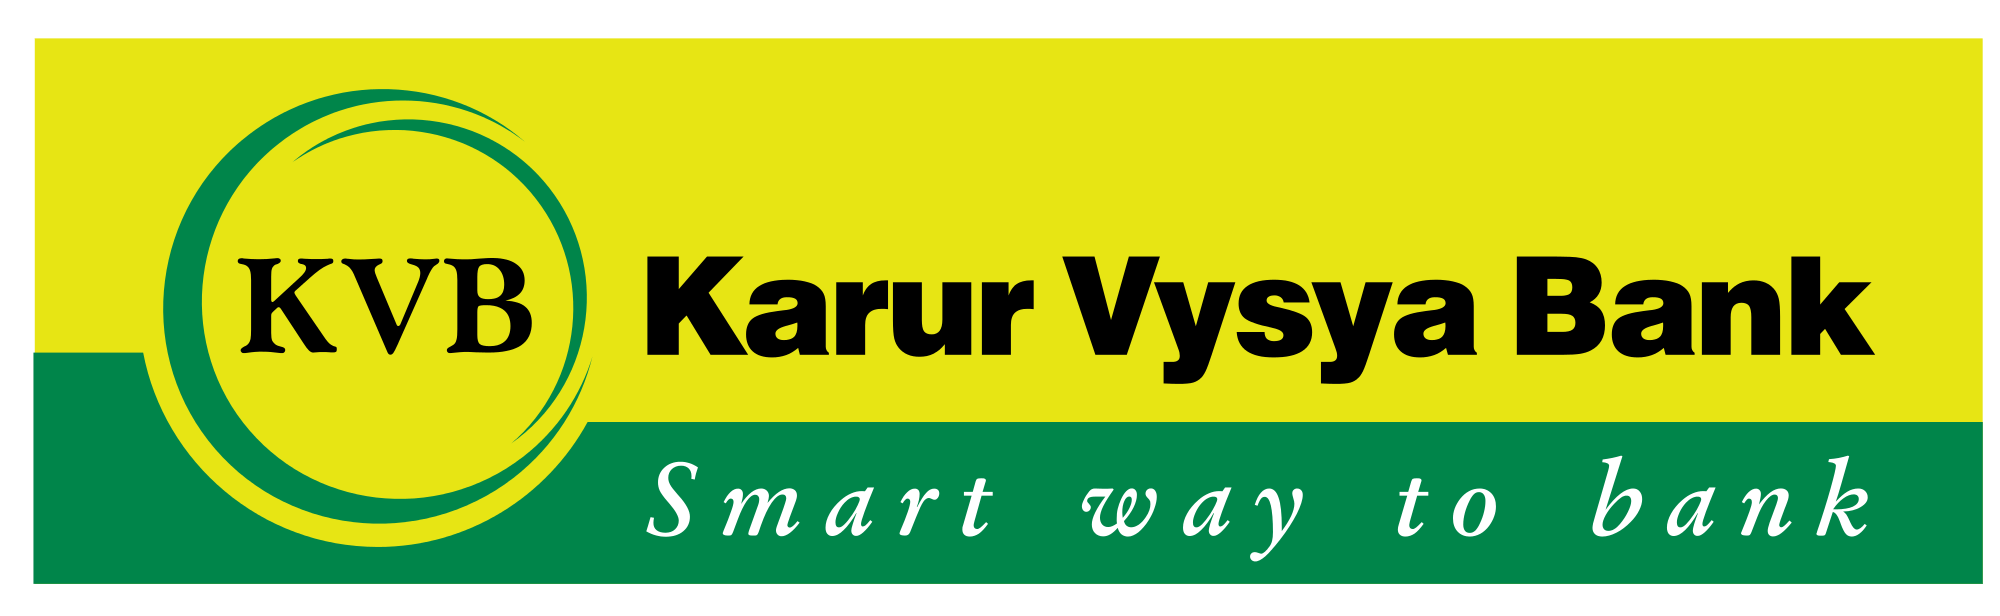 Green and Yellow Bank Logo - Karur Vysya Bank.svg